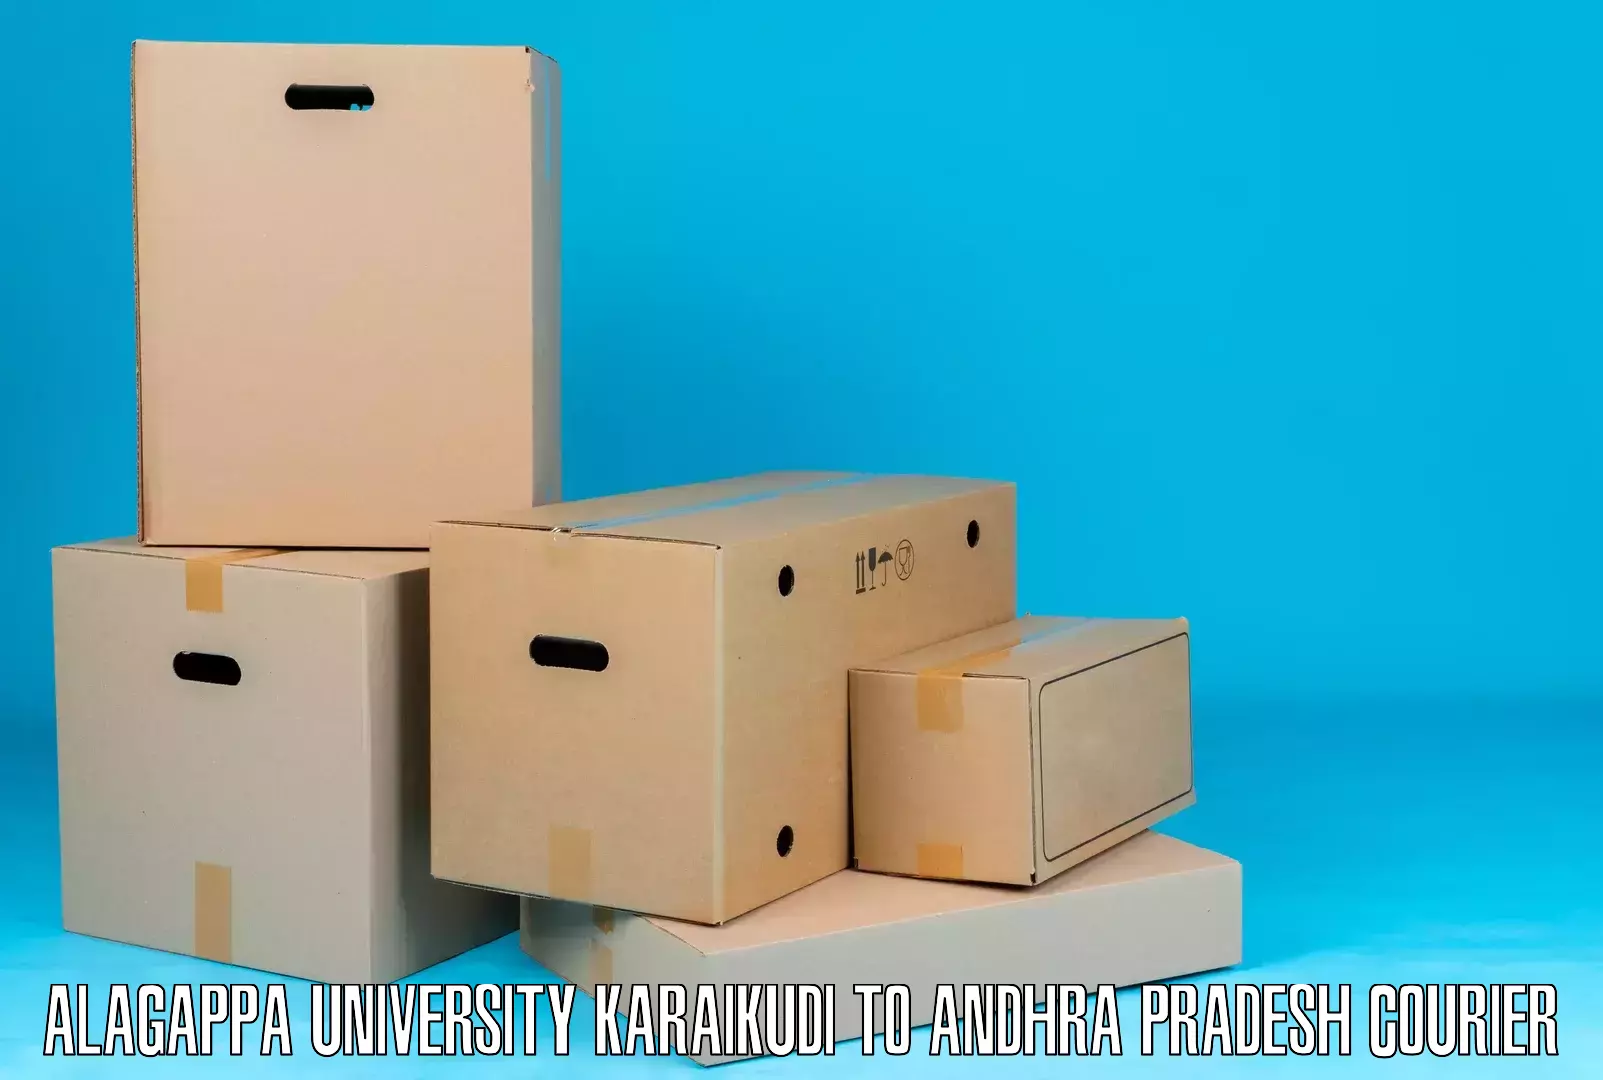 Package consolidation Alagappa University Karaikudi to Devarapalli